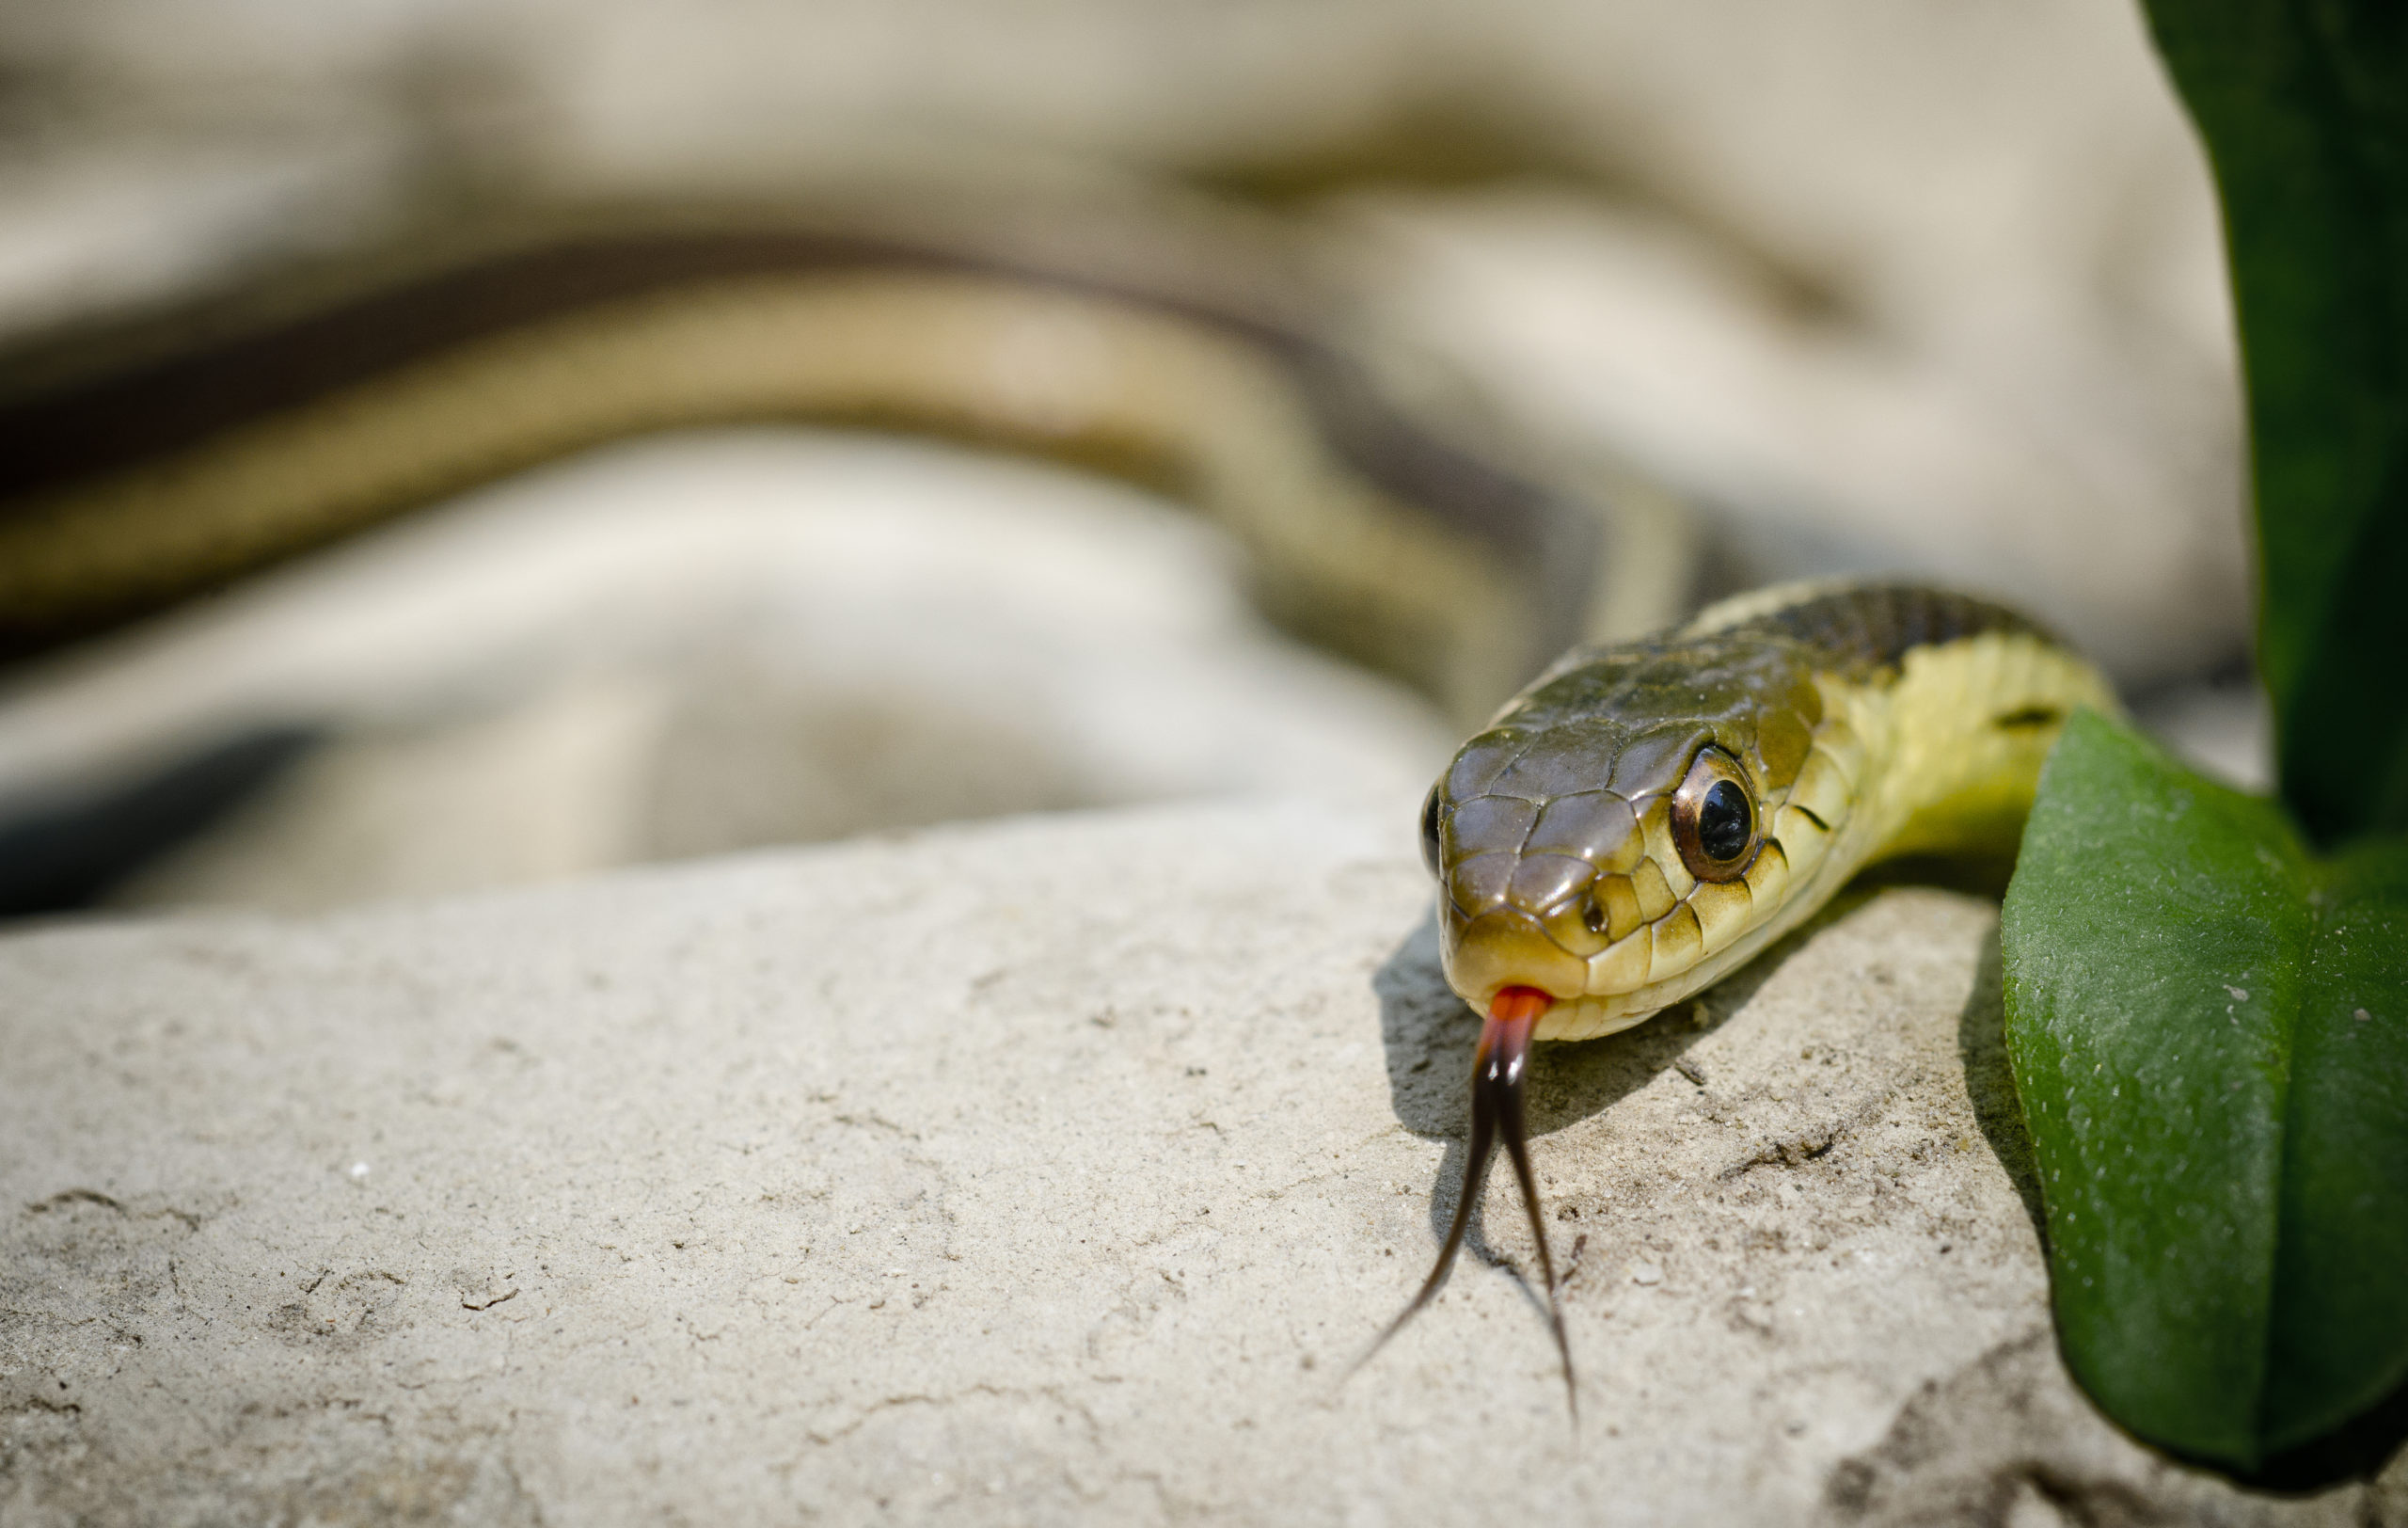 An eastern garter snake slithering over a rock.